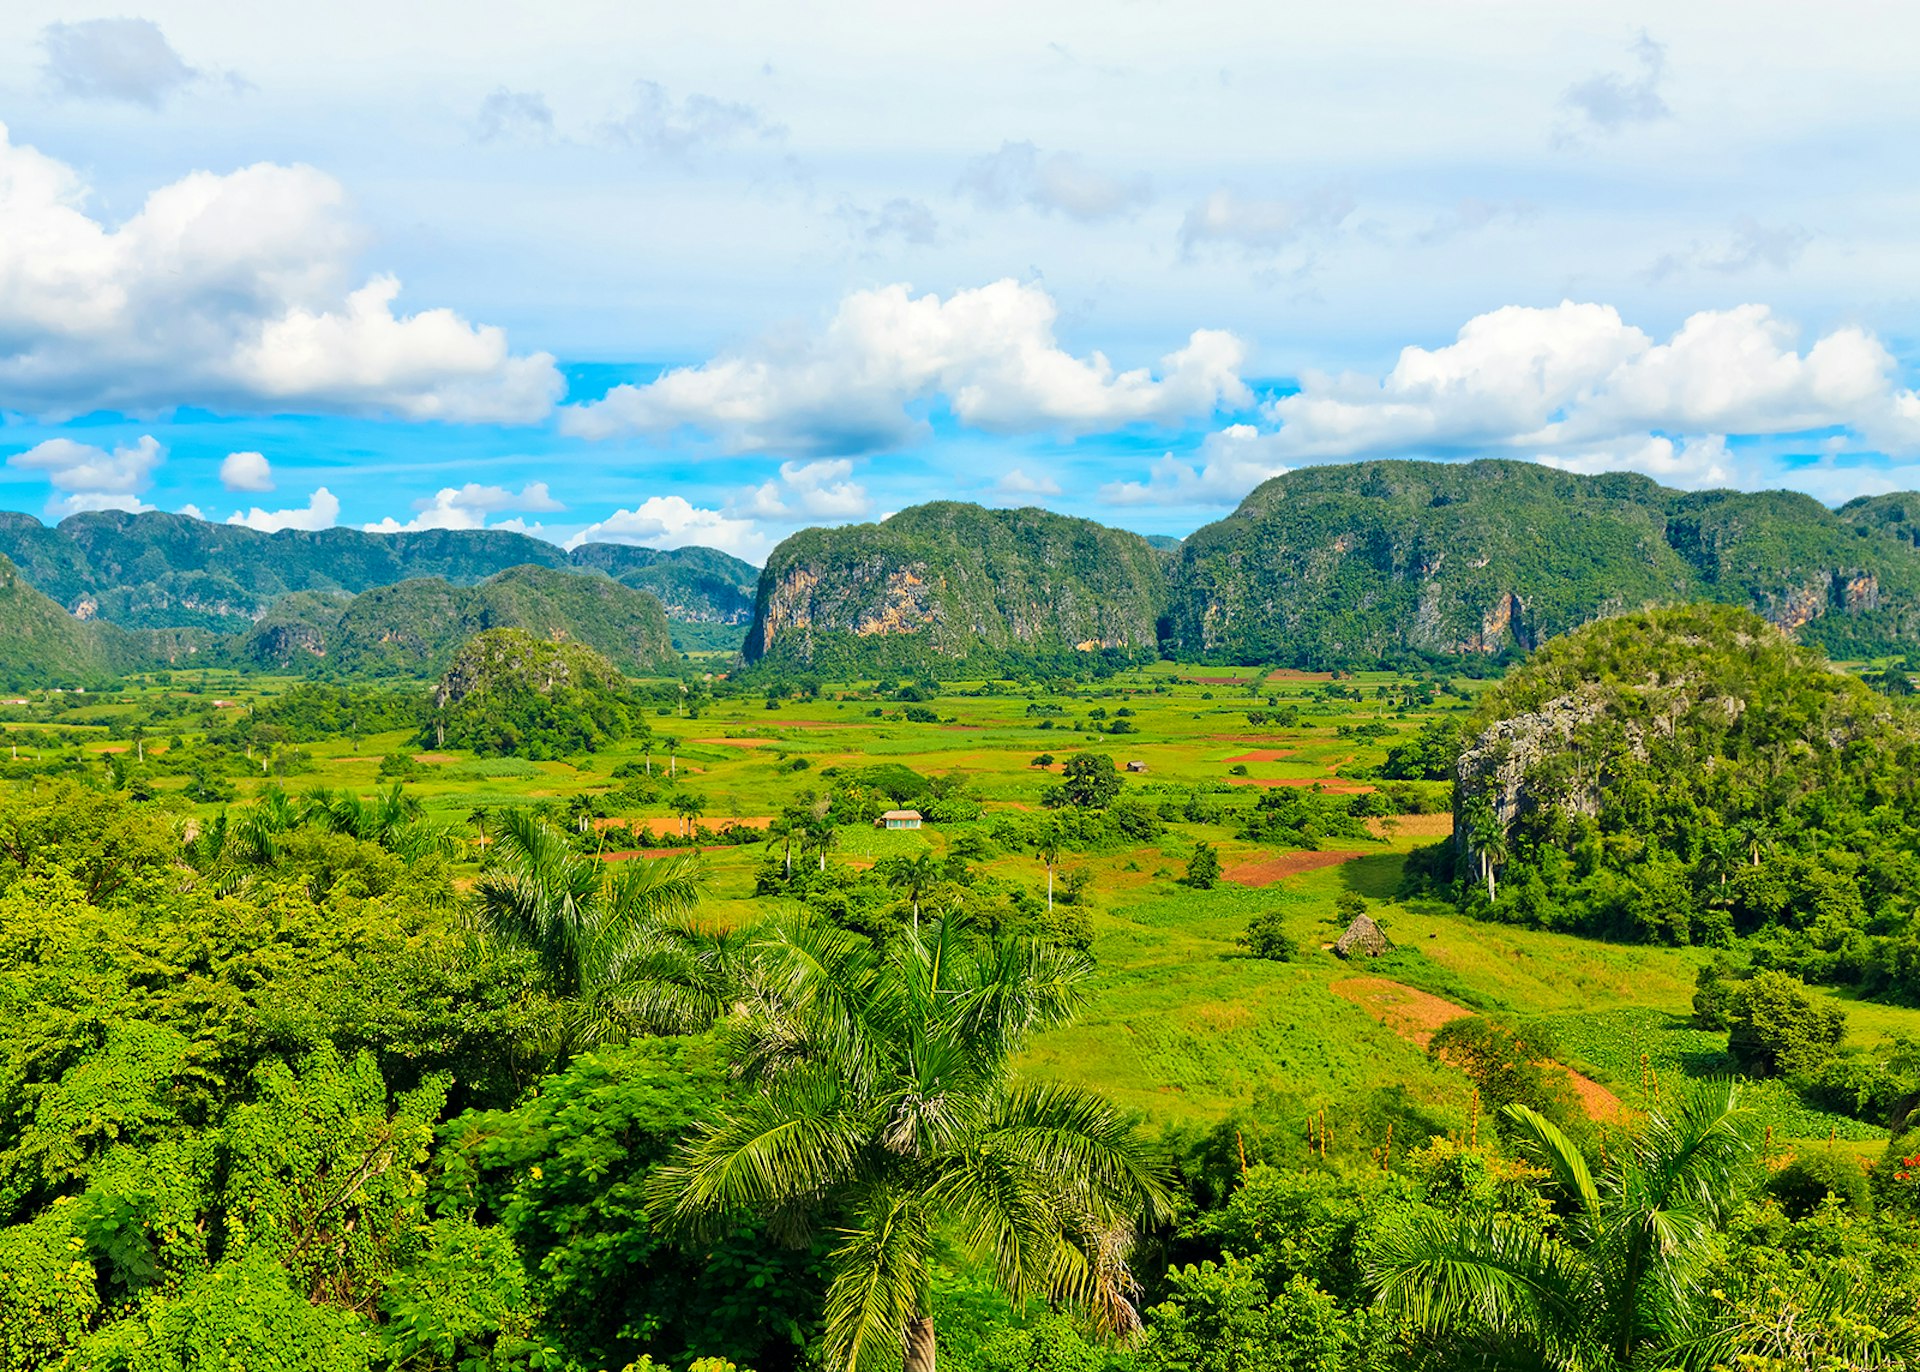 The Vinales valley in Cuba © Kamira / Shutterstock